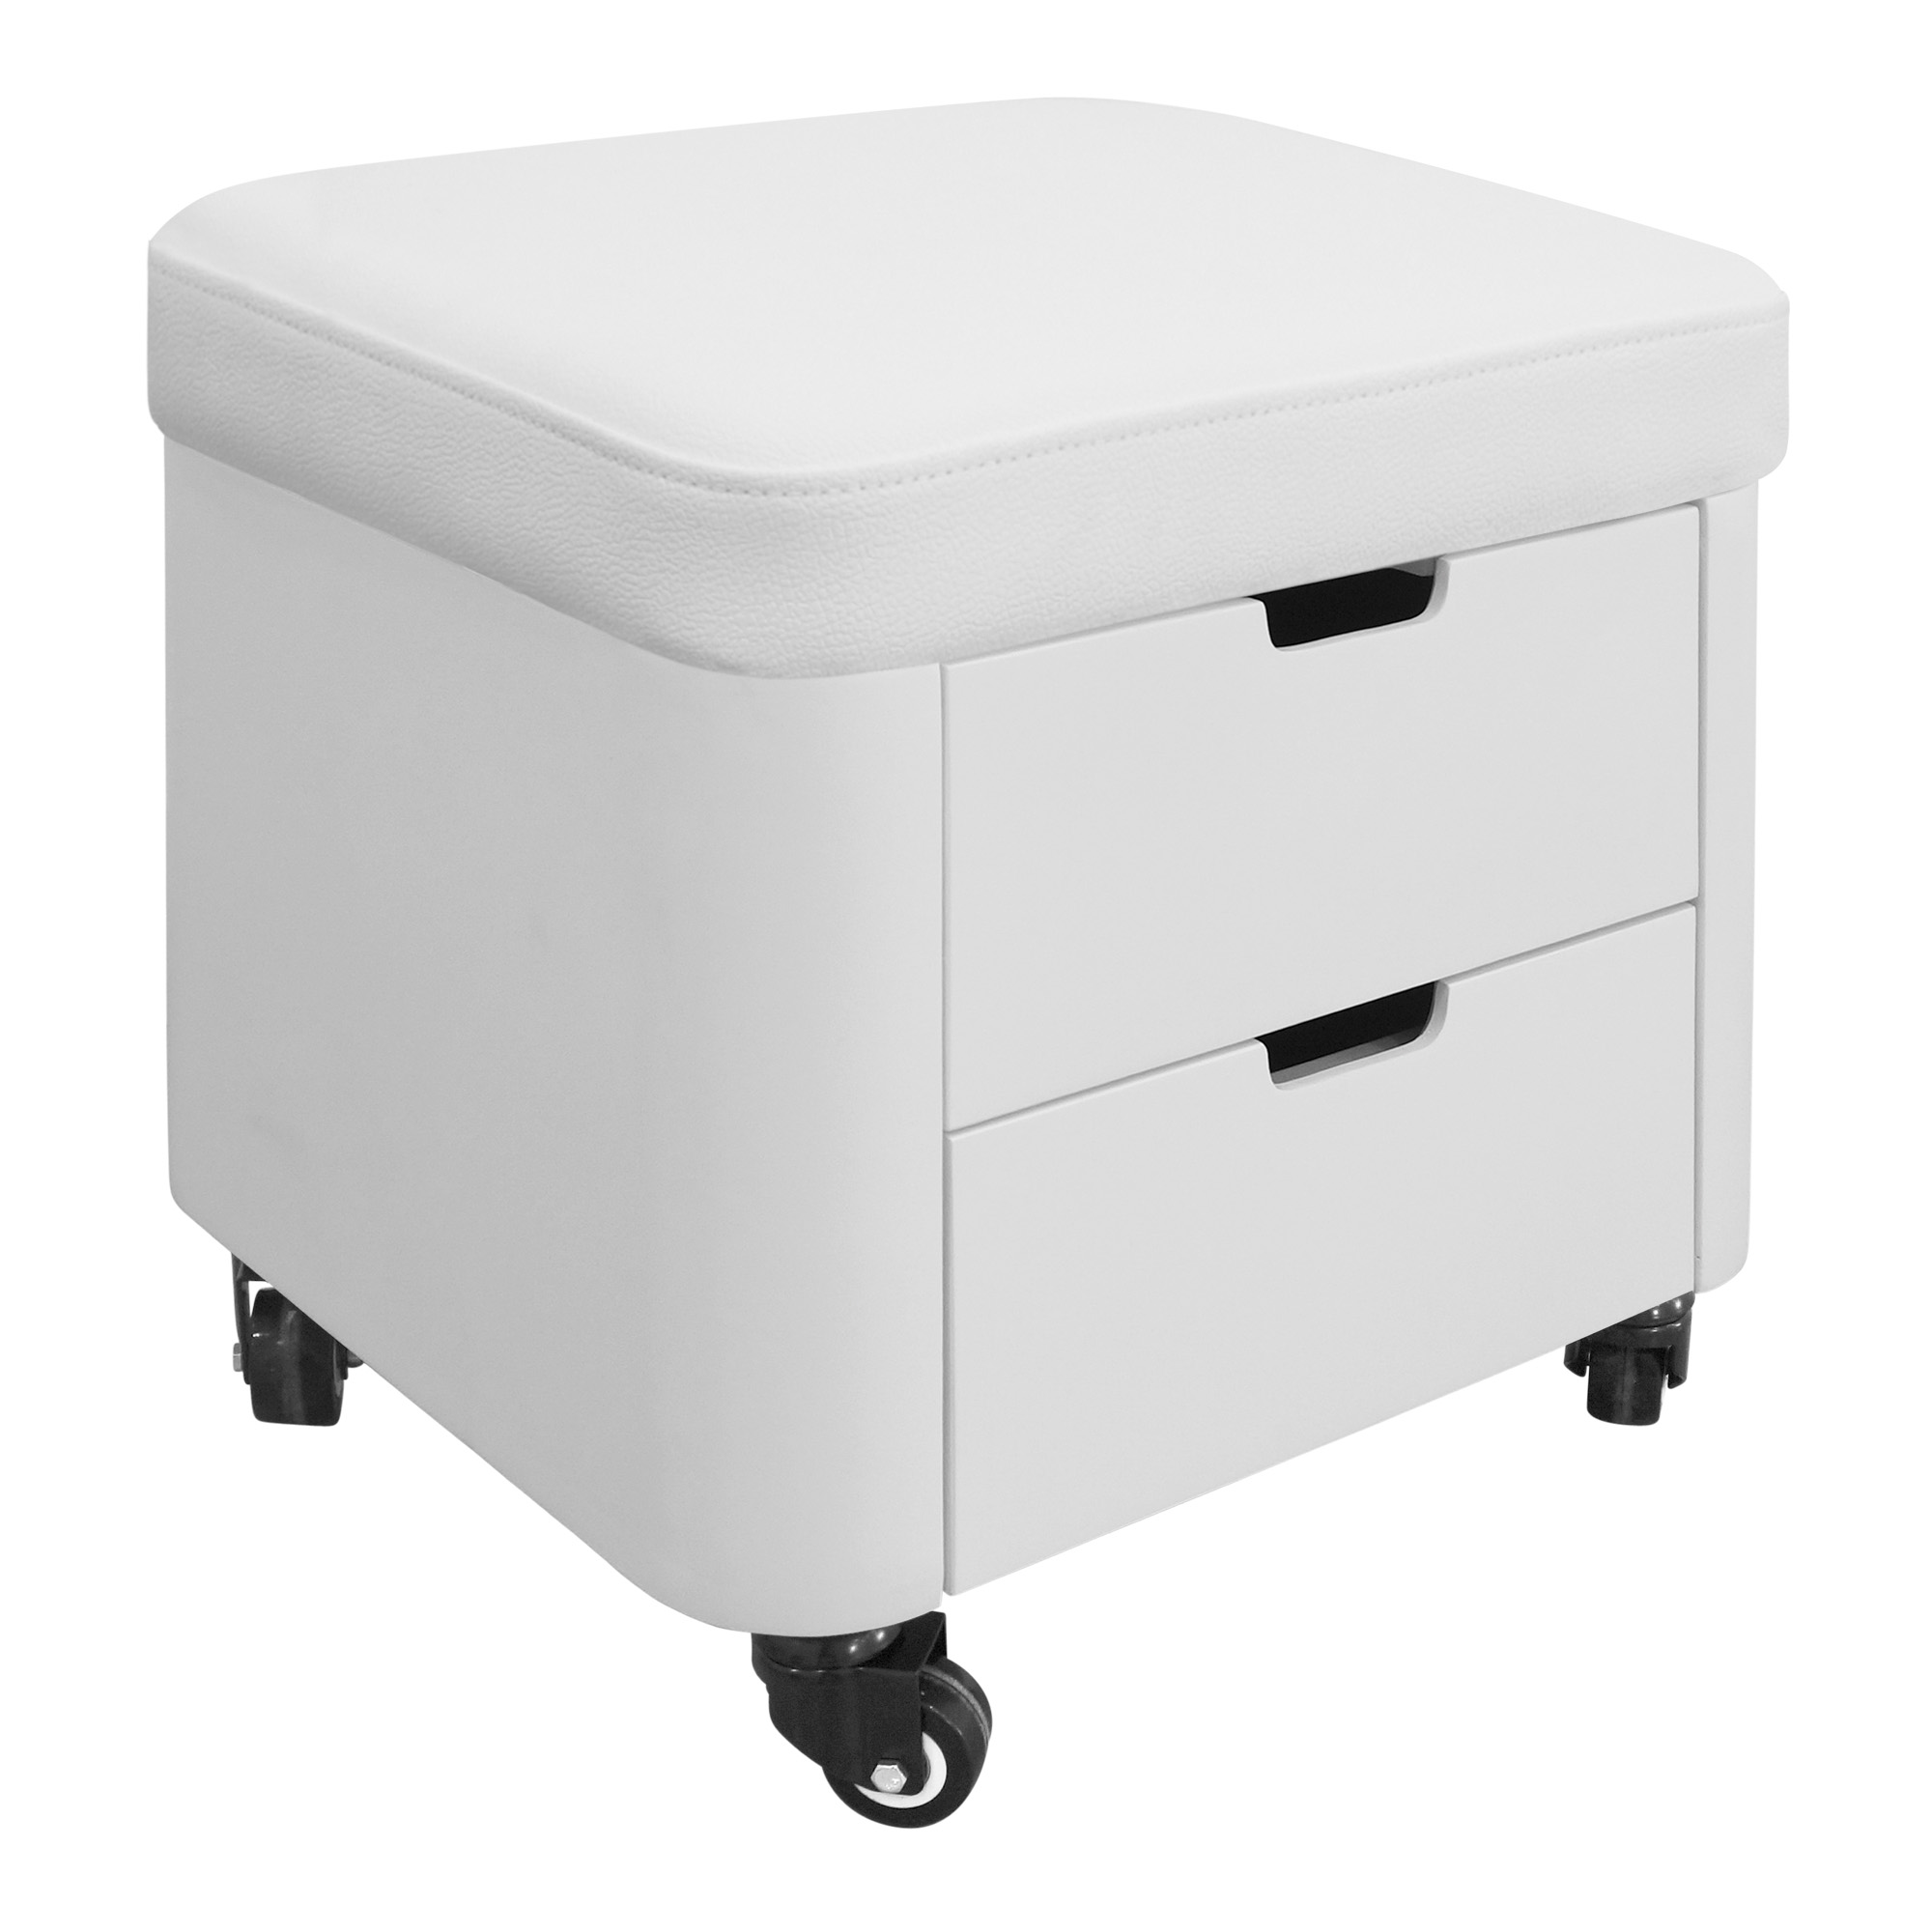 MAM multi-purpose stool with drawers